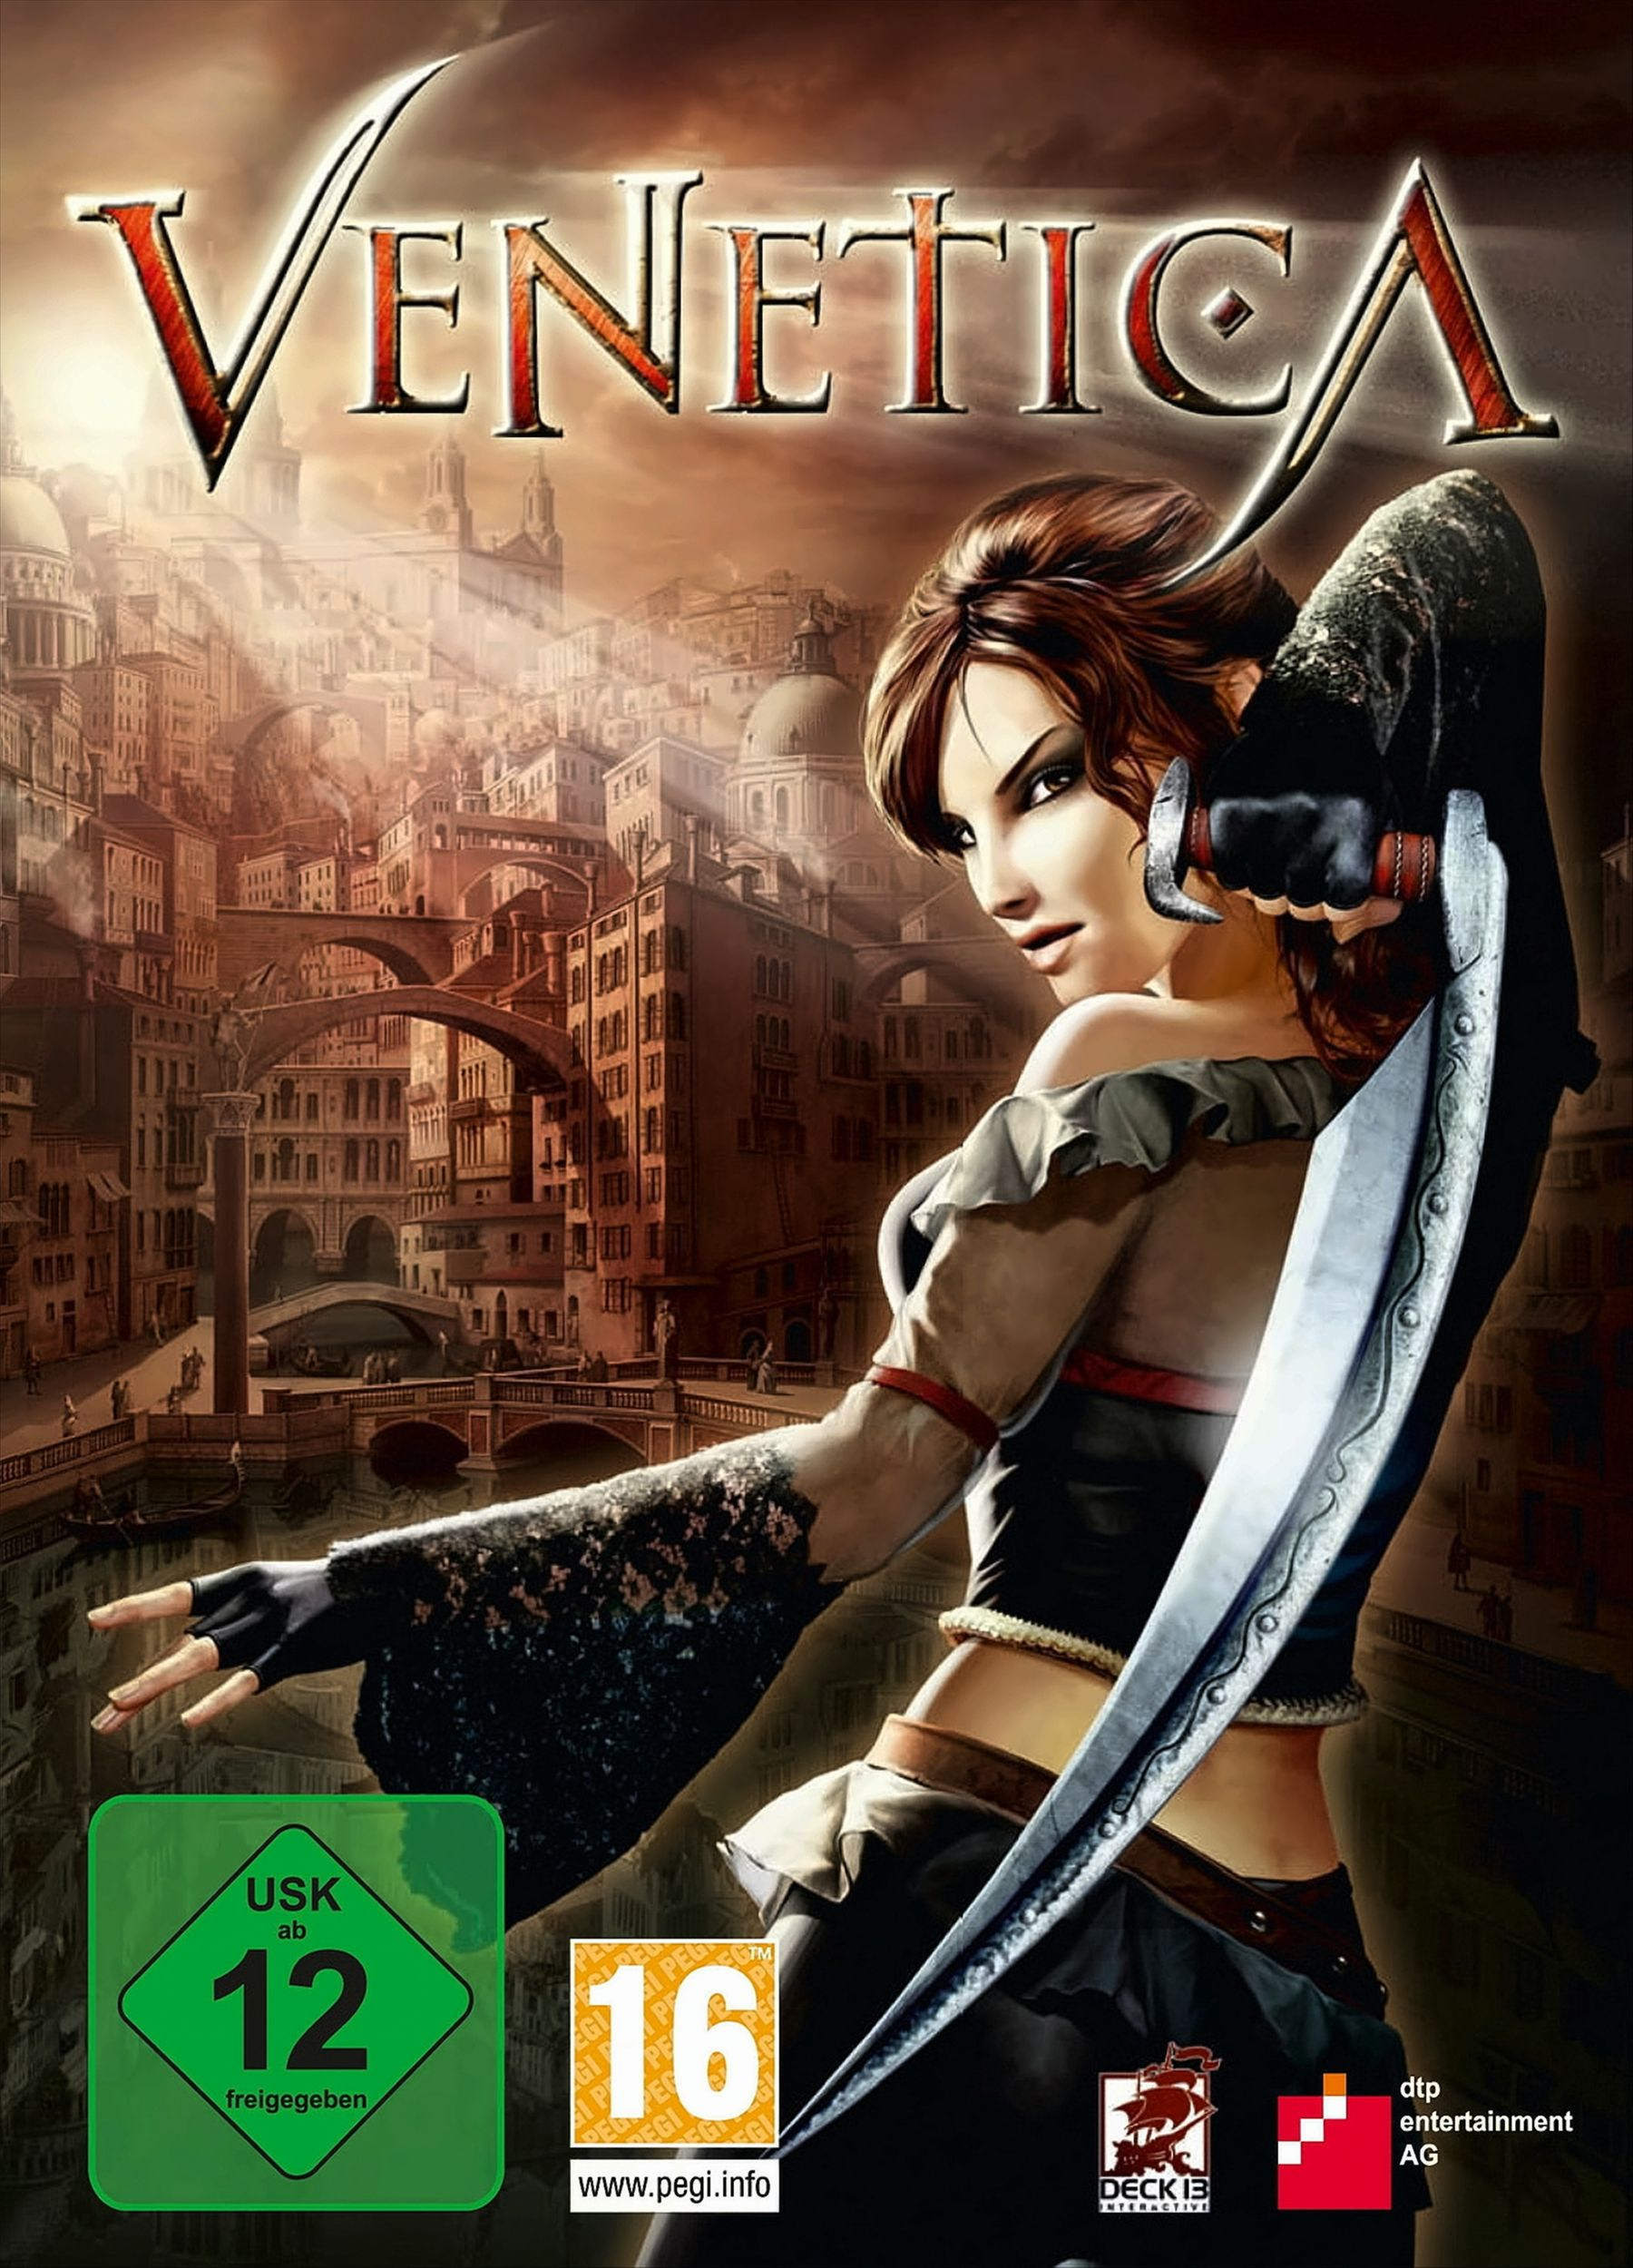 Venetica - [PC